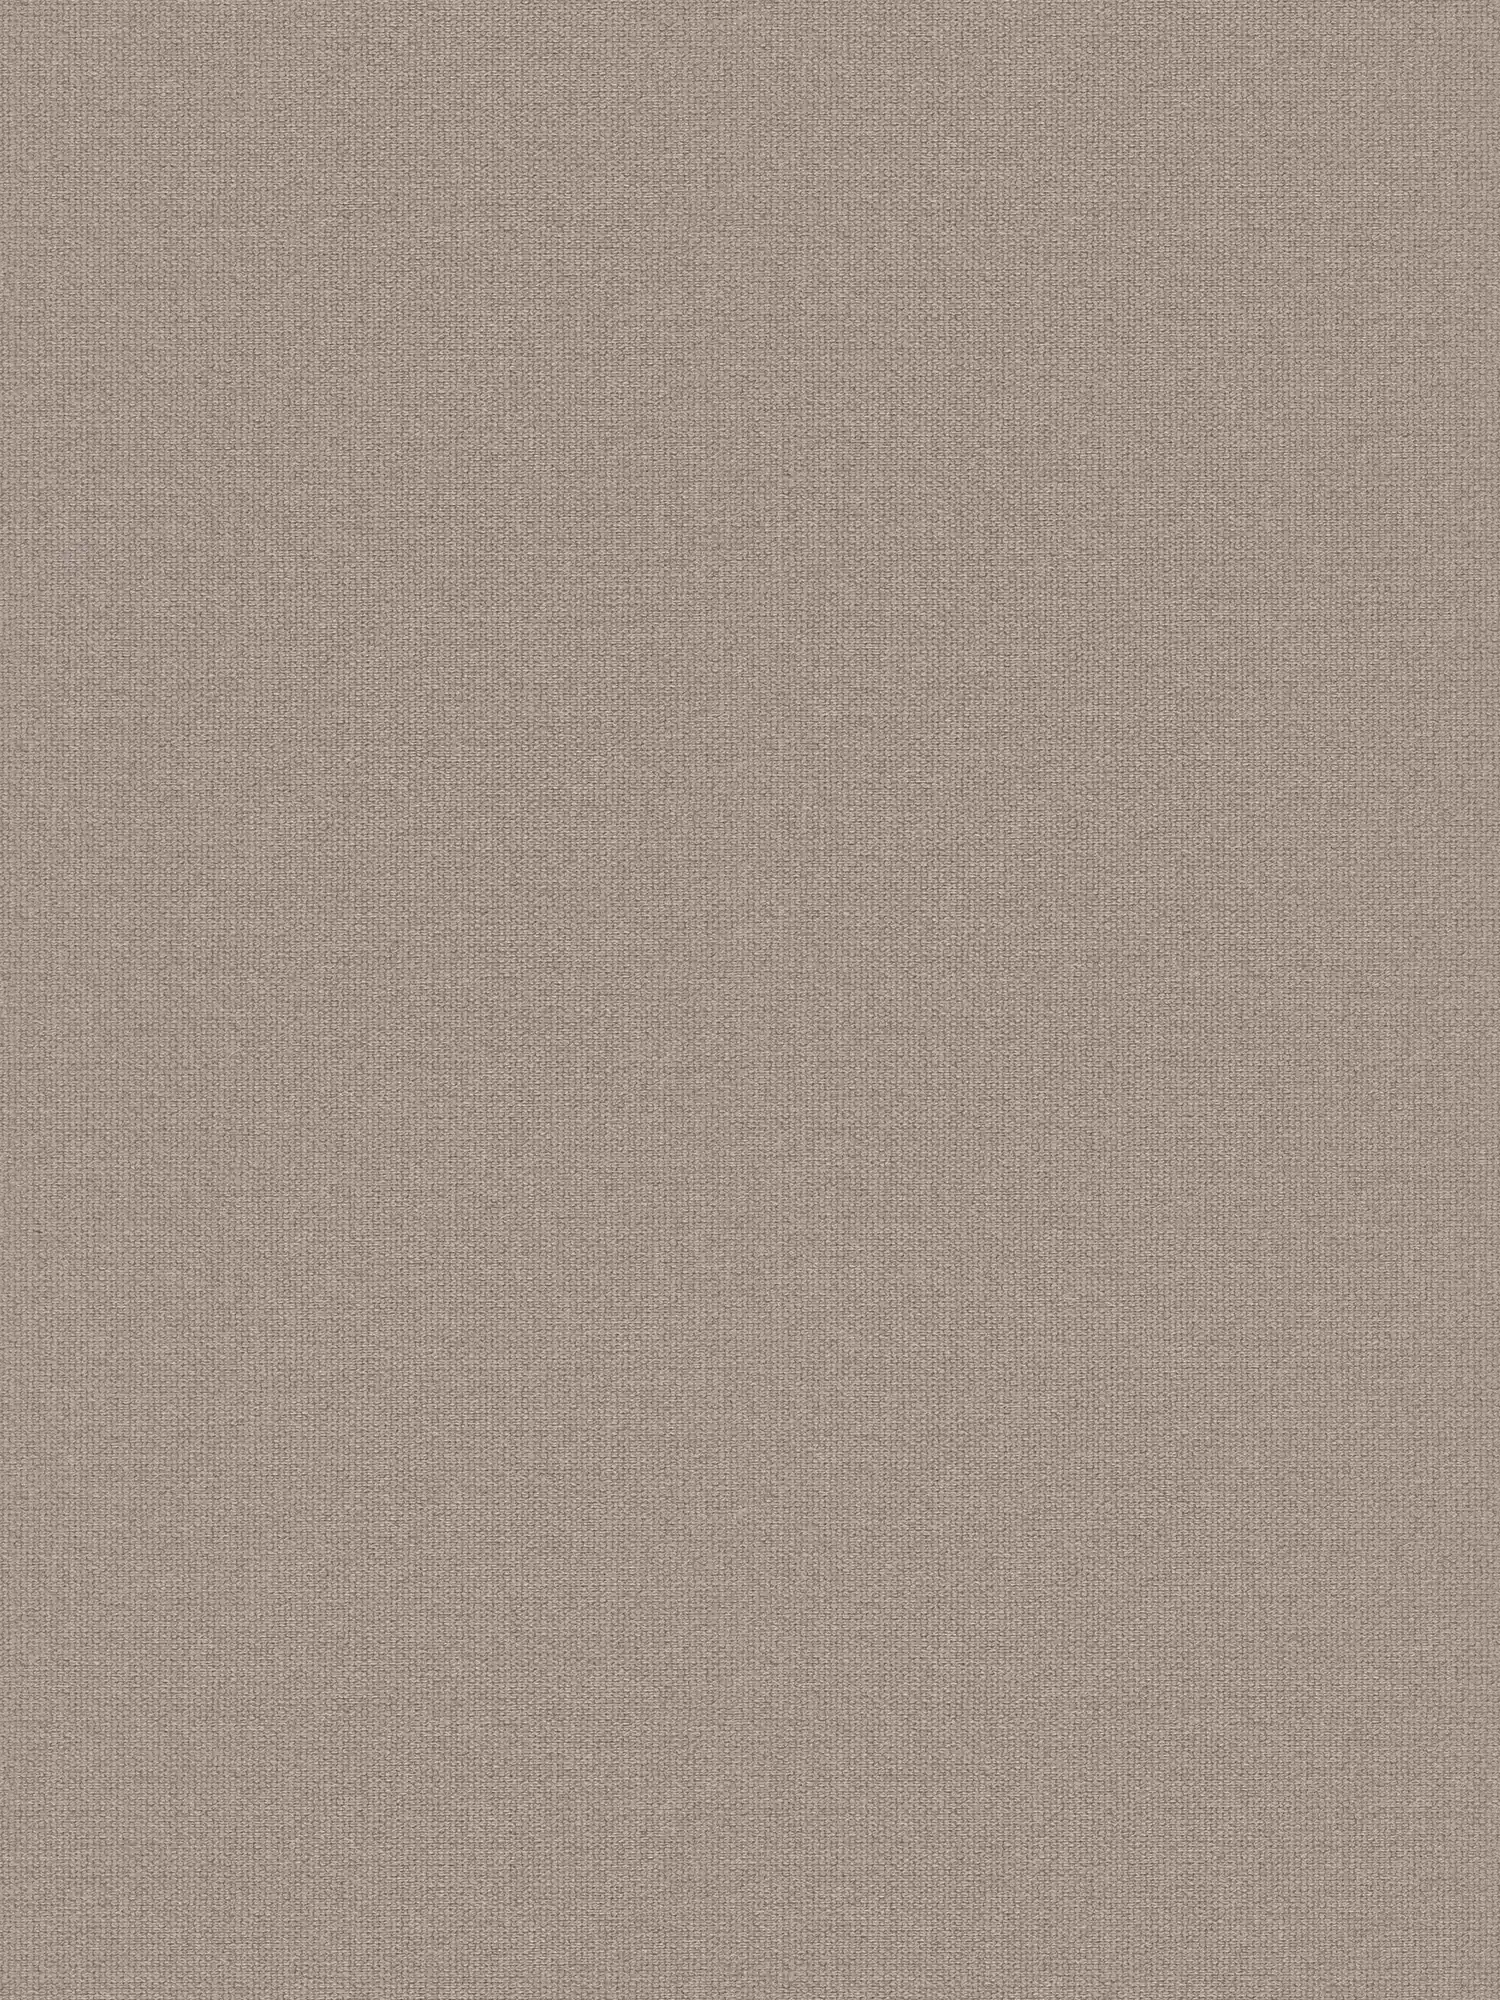 Carta da parati effetto lino con dettagli di struttura, tinta unita - grigio, beige
